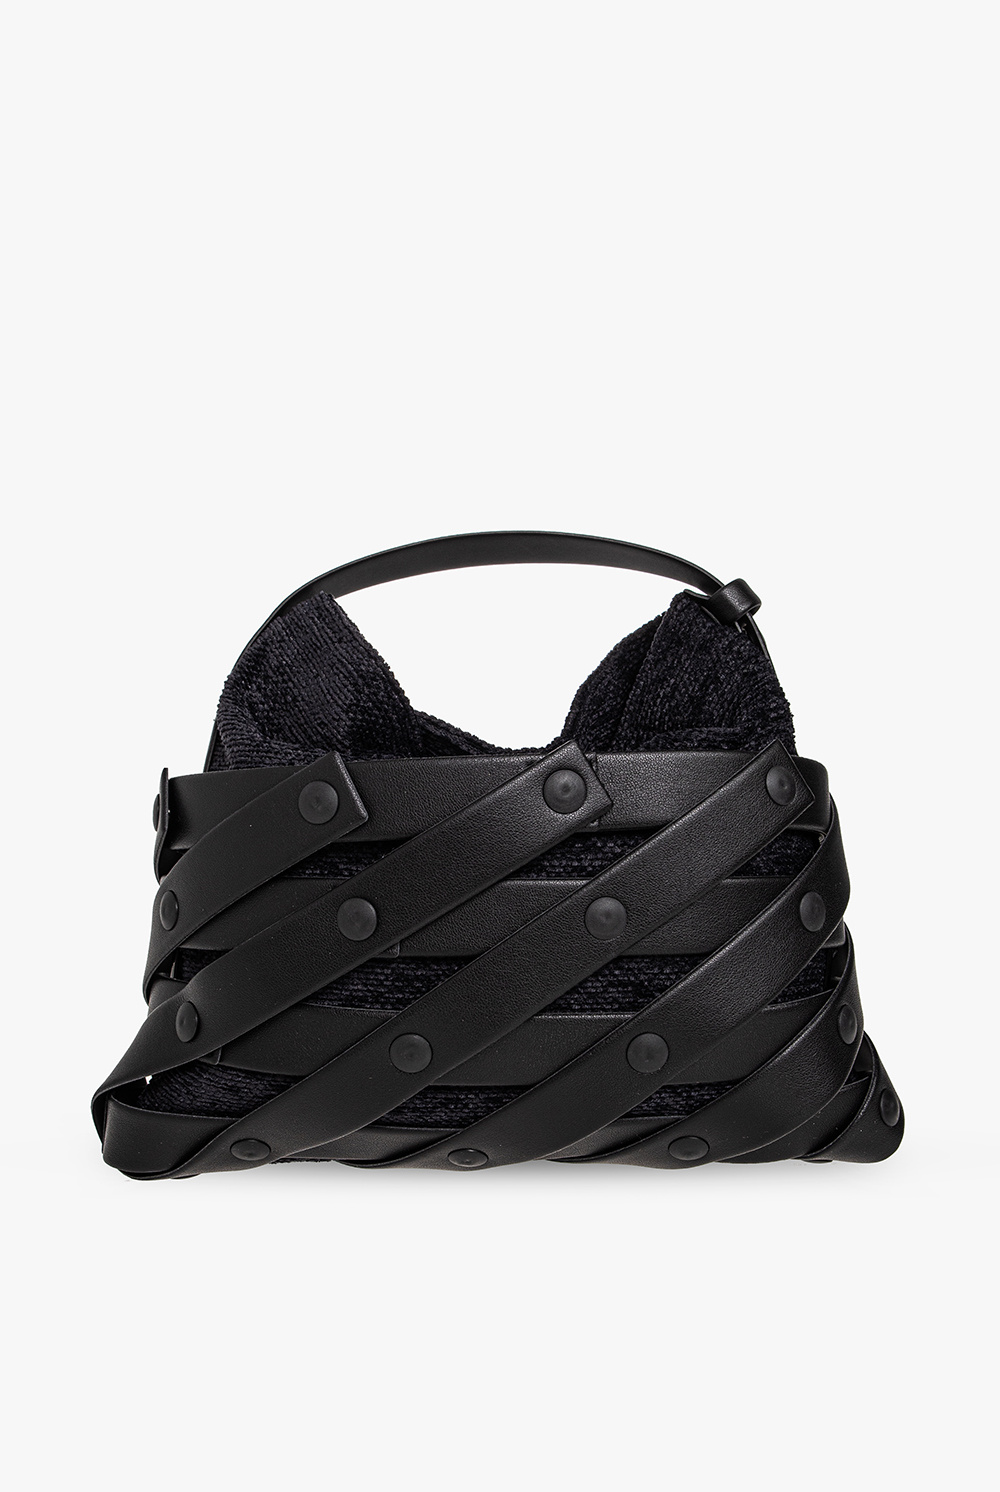 Issey Miyake Pleats Please ‘Spiral Grid’ shoulder AF2068 bag